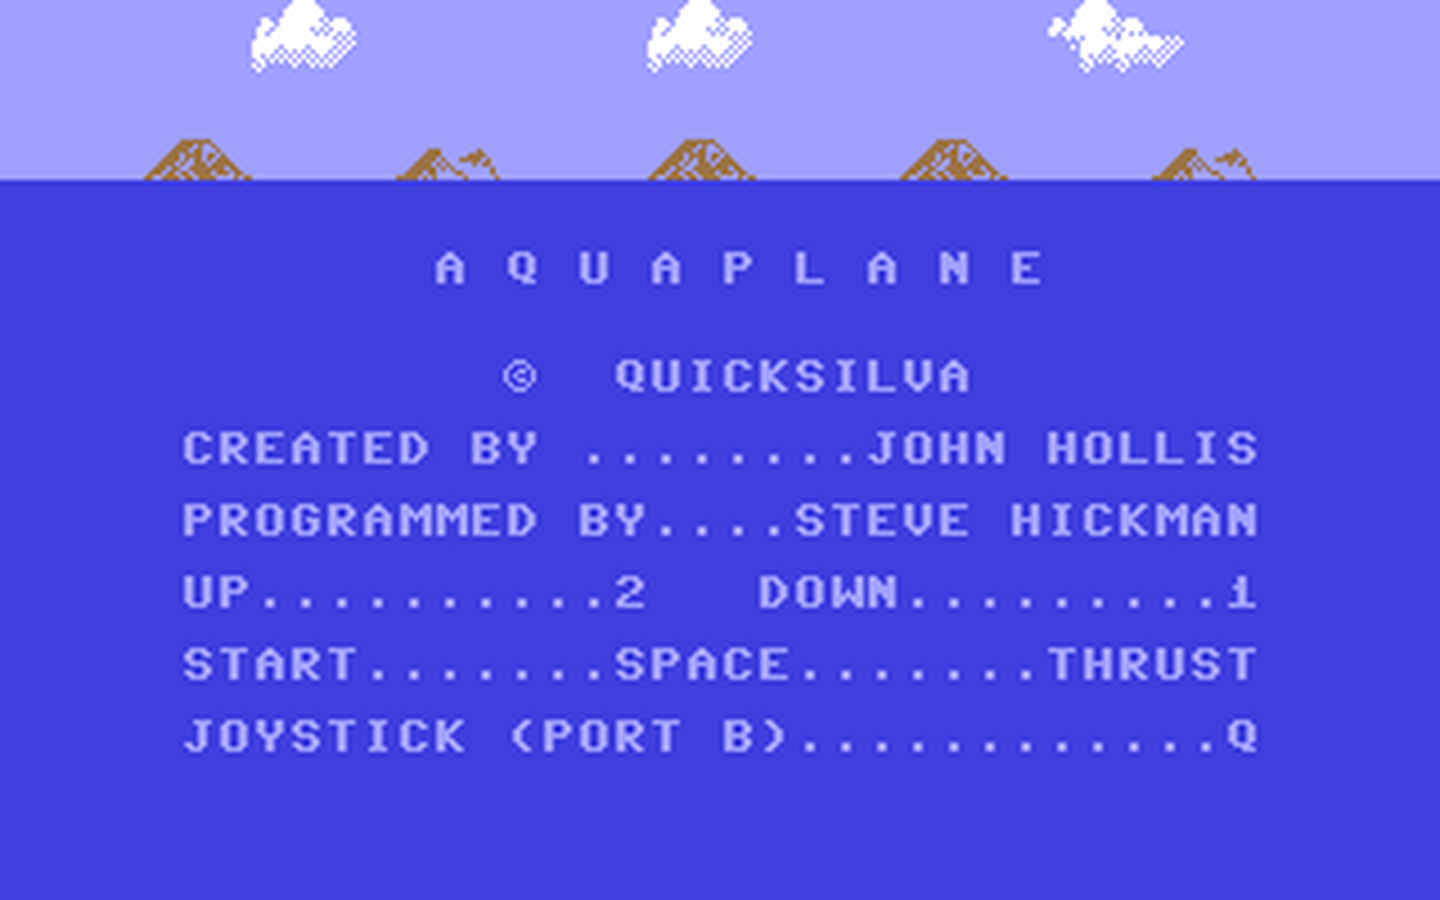 C64 GameBase Aquaplane Argus_Press_Software_(APS)/Quicksilva 1983